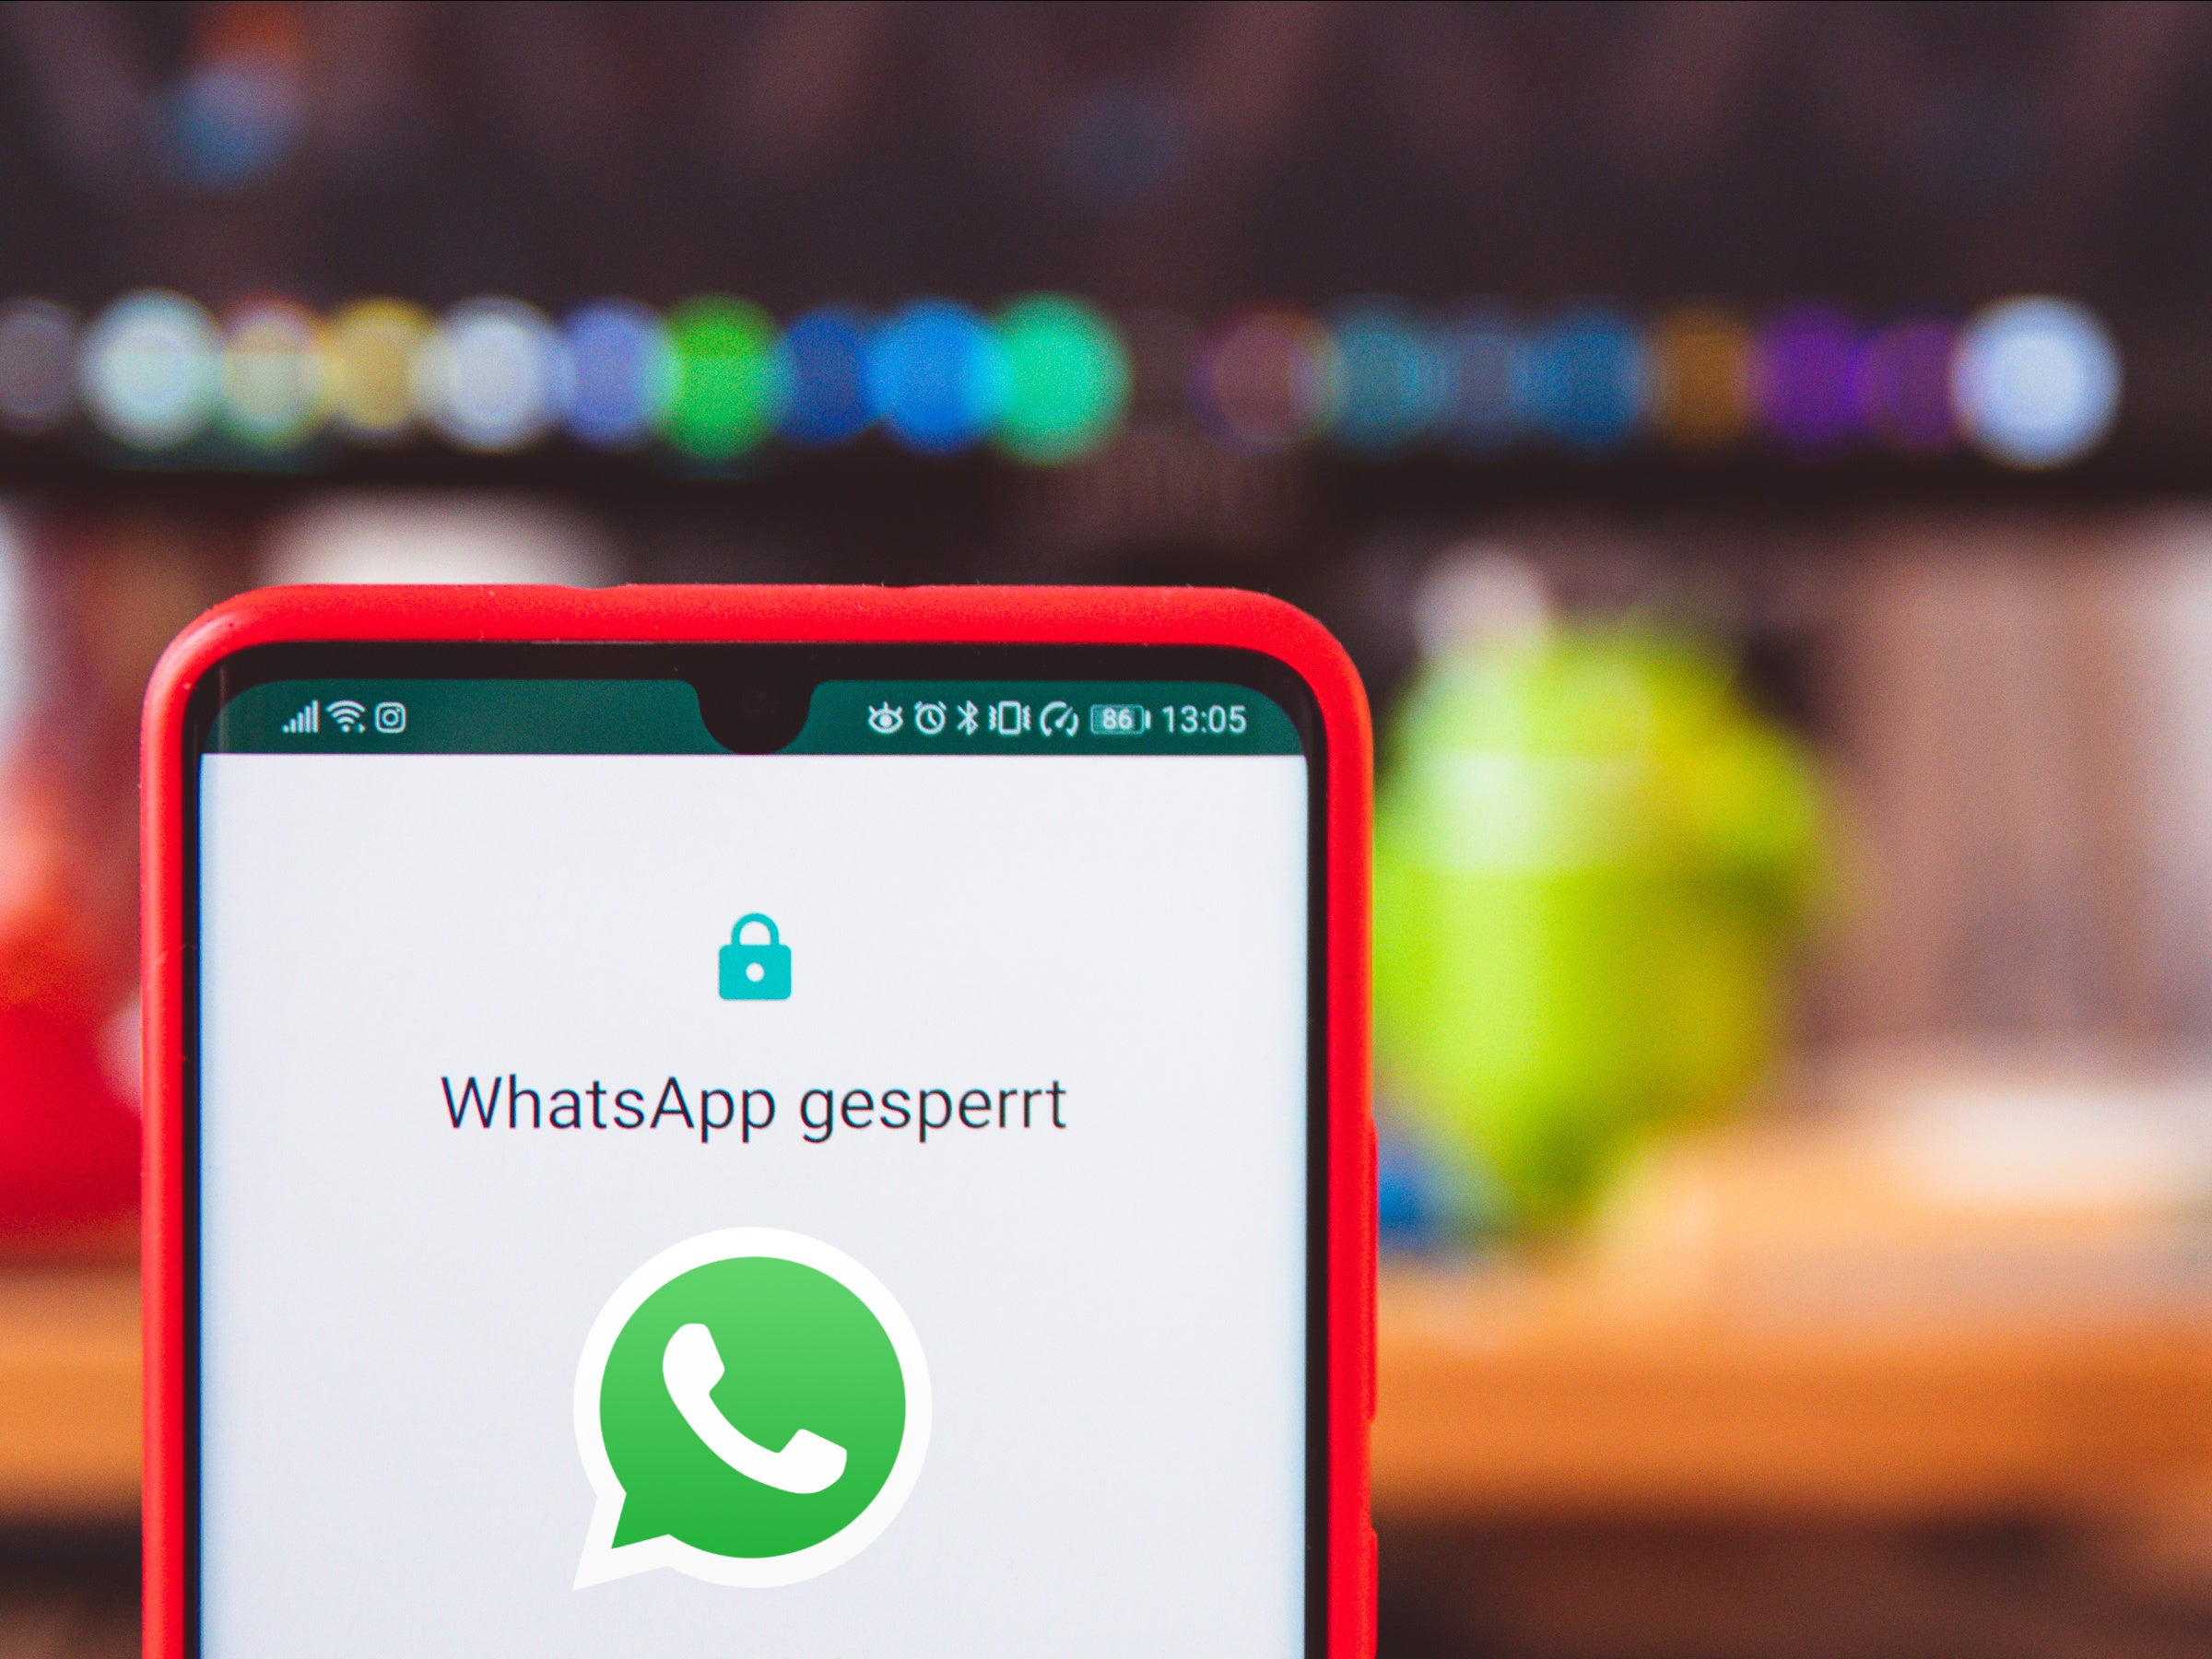 #Bei WhatsApp gesperrt: Das sind die Gründe und was du jetzt tun kannst